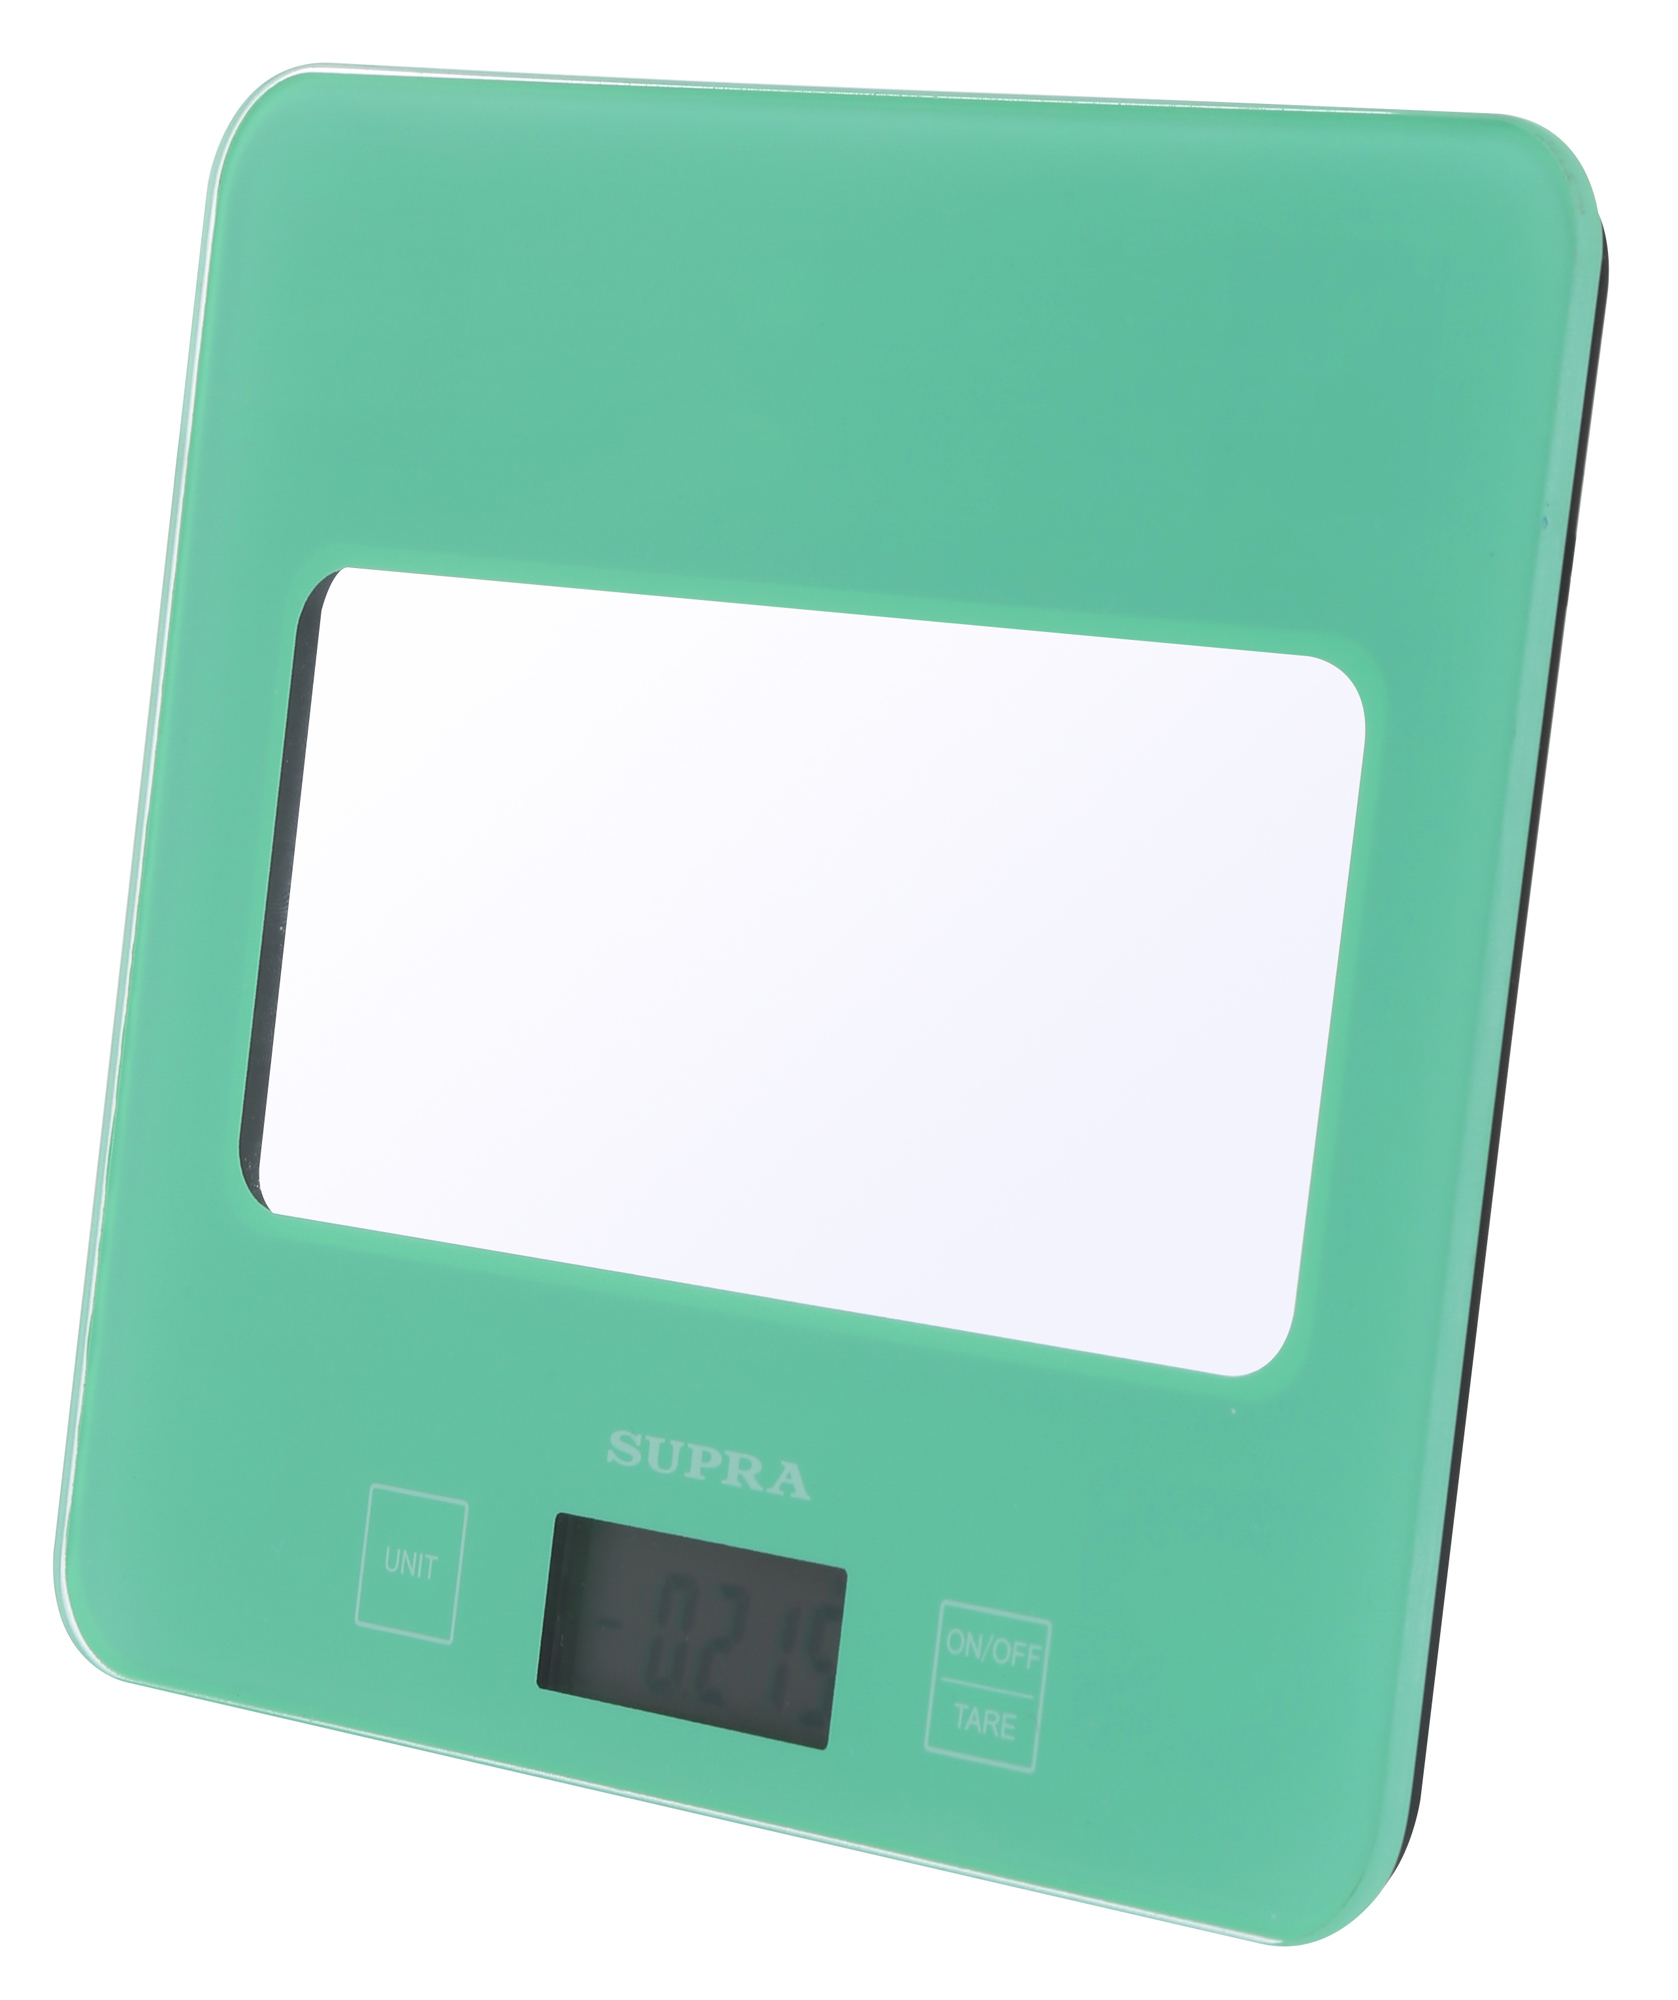 Картинка Кухонные весы SUPRA BSS-4201N по разумной цене купить в интернет магазине mall.su